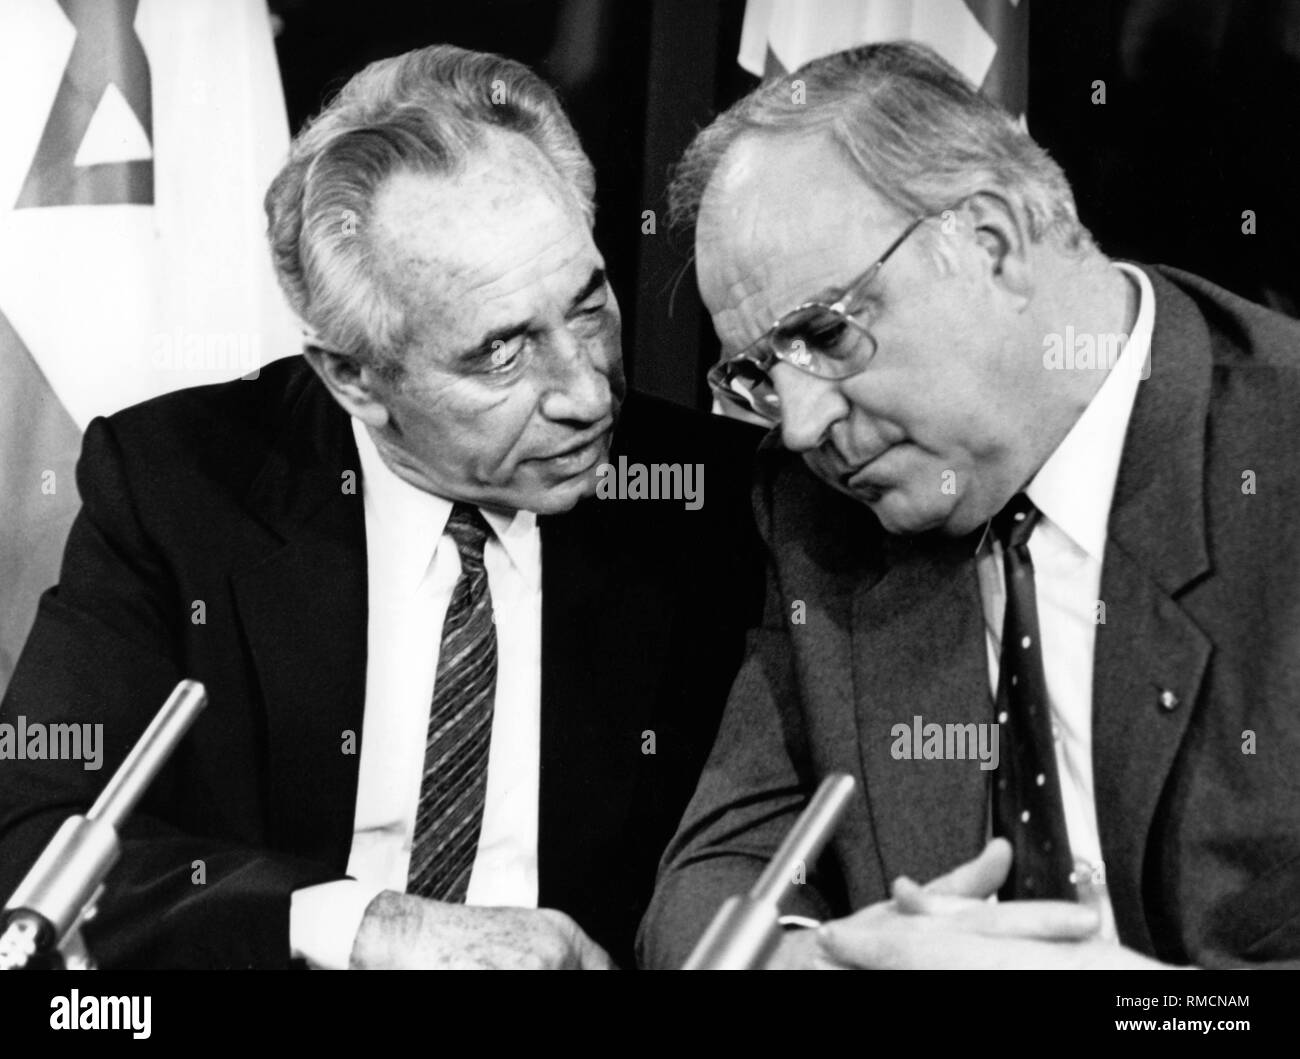 El Primer Ministro israelí, Shimon Peres y al oeste el canciller alemán Helmut Kohl en la conversación. Probablemente durante una conferencia de prensa. Foto de stock